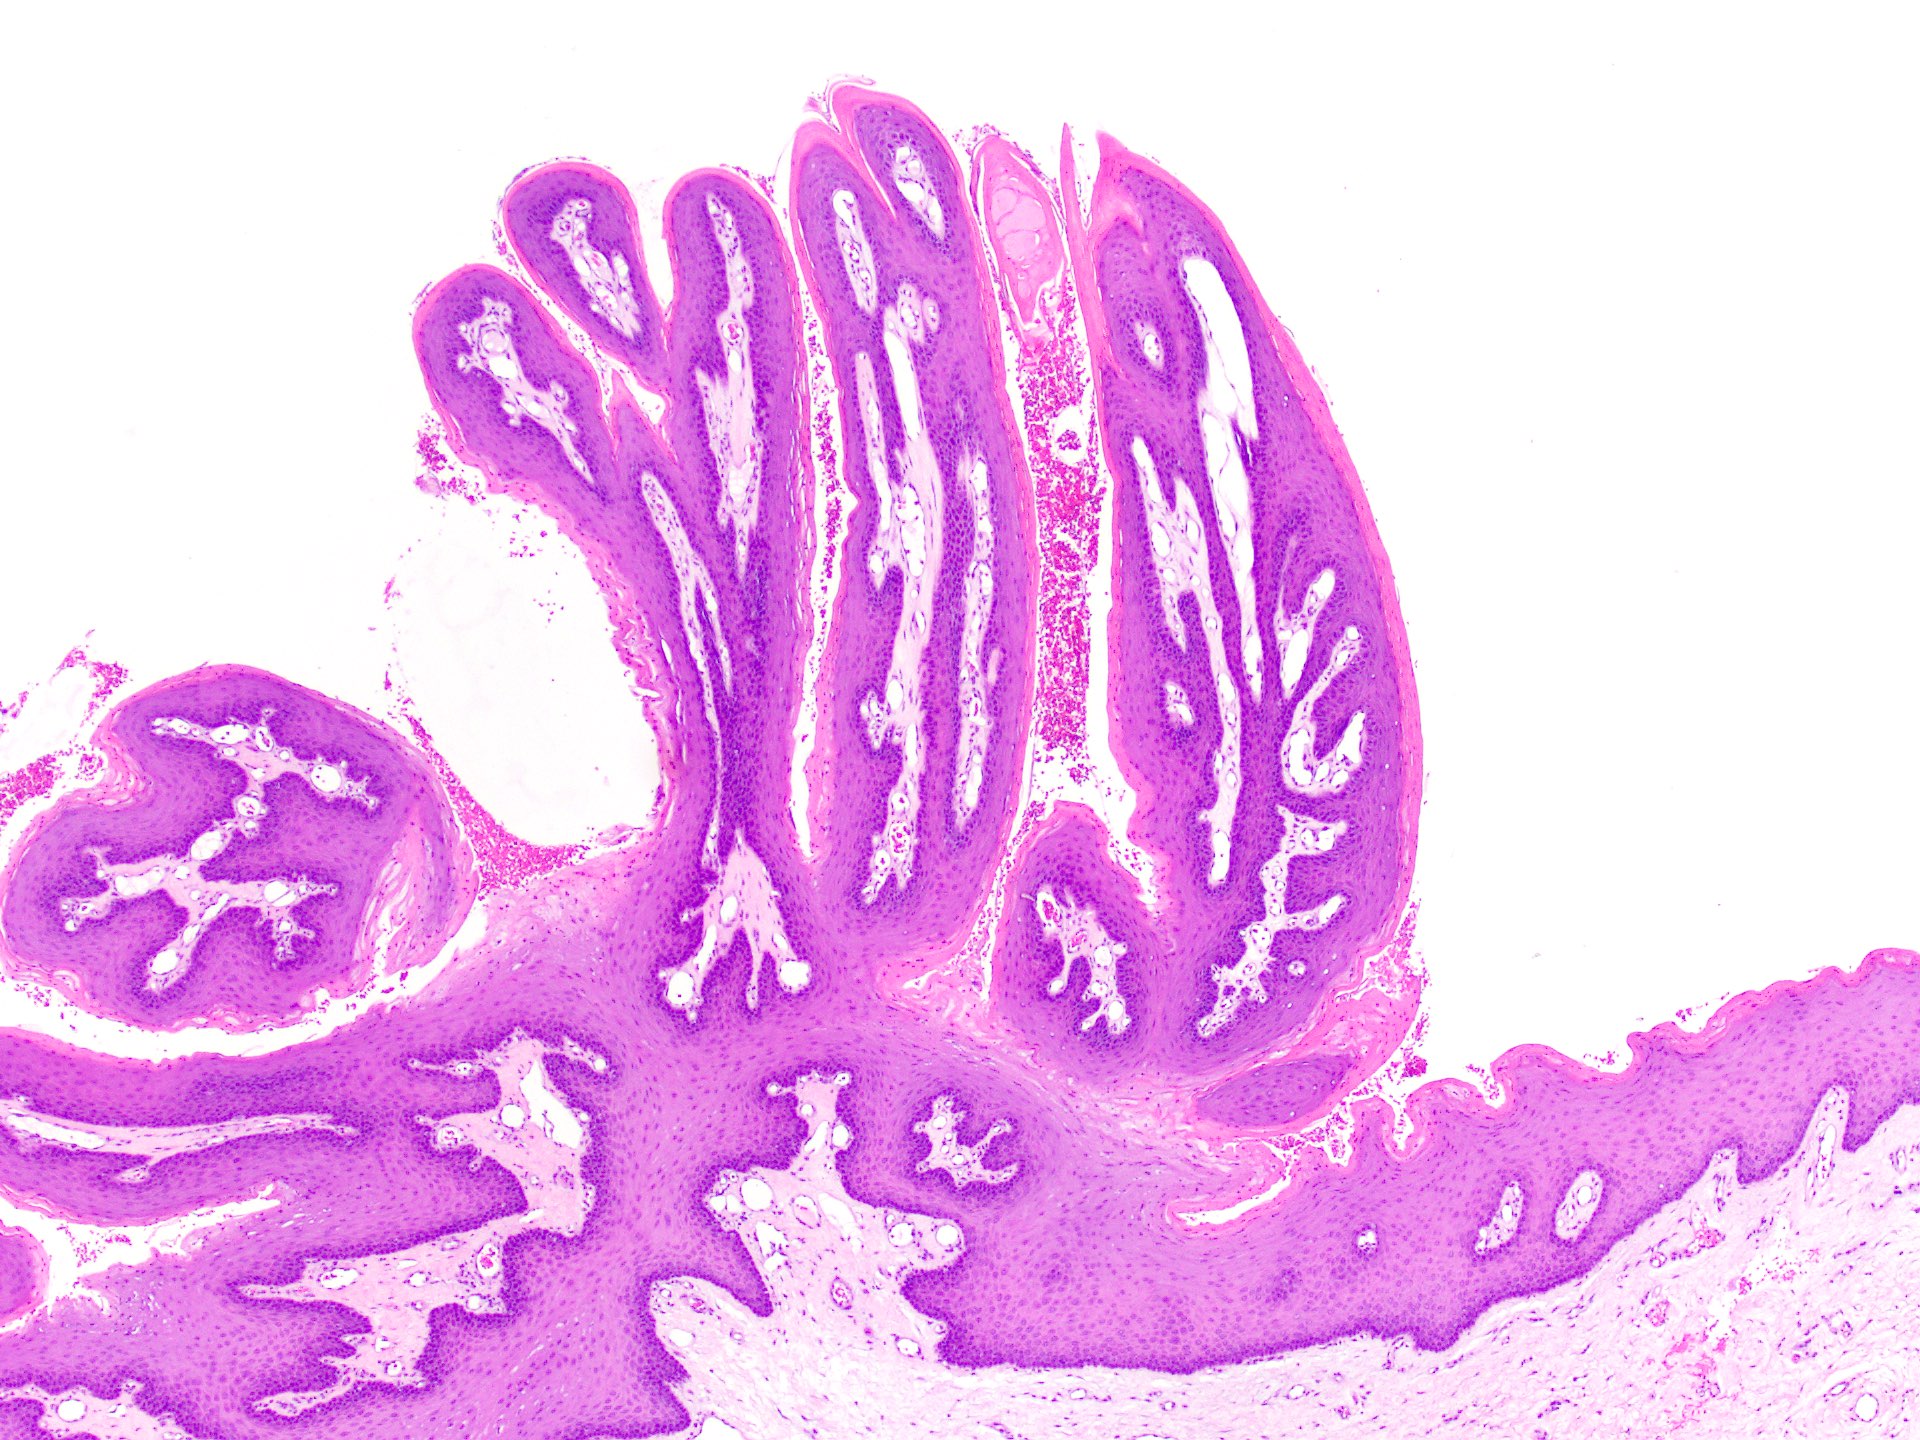 papilloma skin pathology